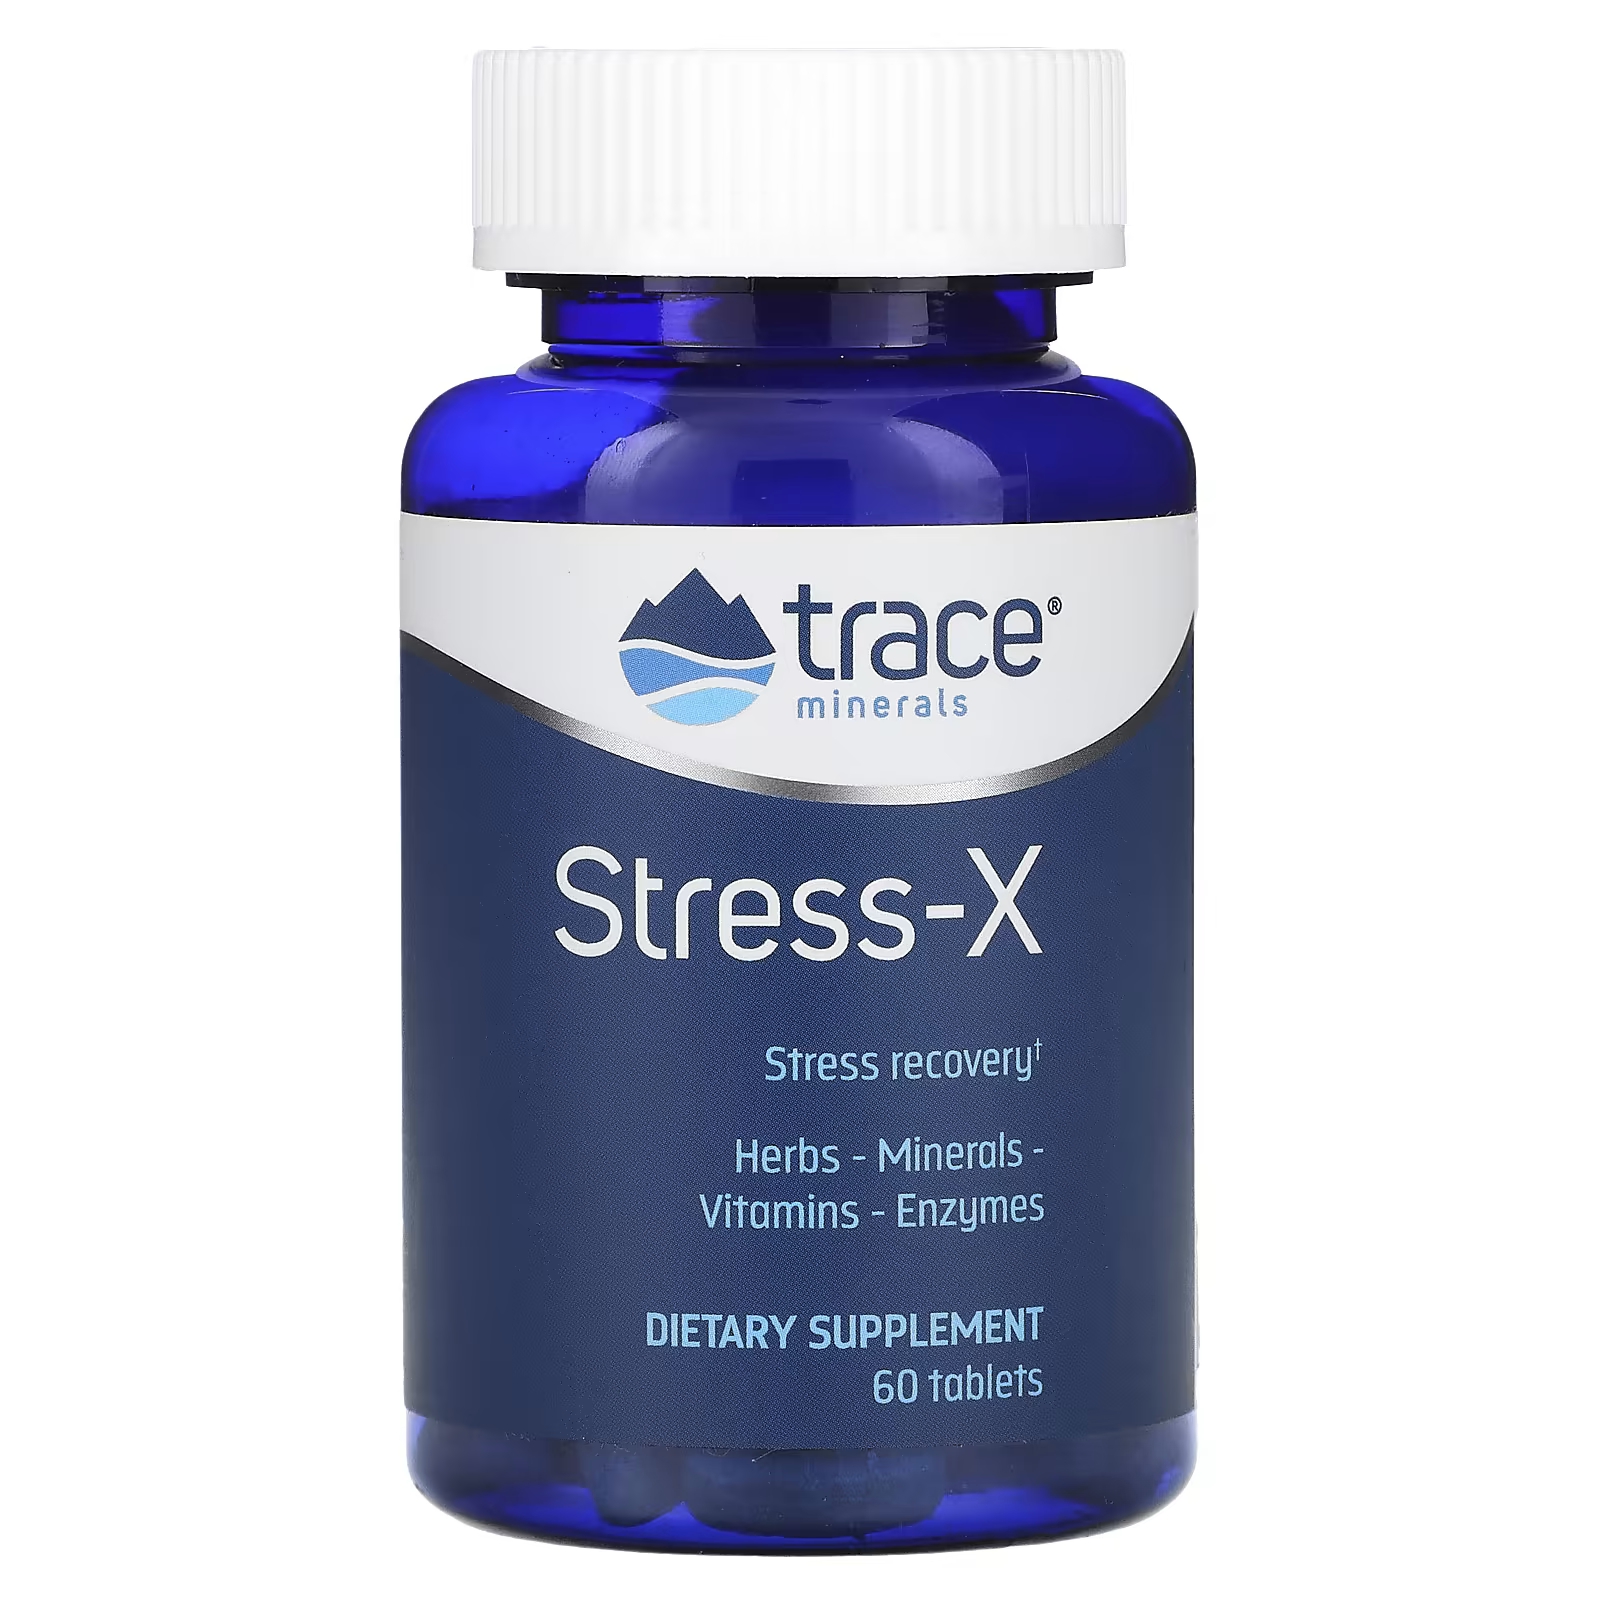 Пищевая добавка Trace Minerals Stress-X, 60 таблеток шипучие таблетки trace minerals tm sport max hydrate endurance цитрус 8 тюбиков по 10 таблеток